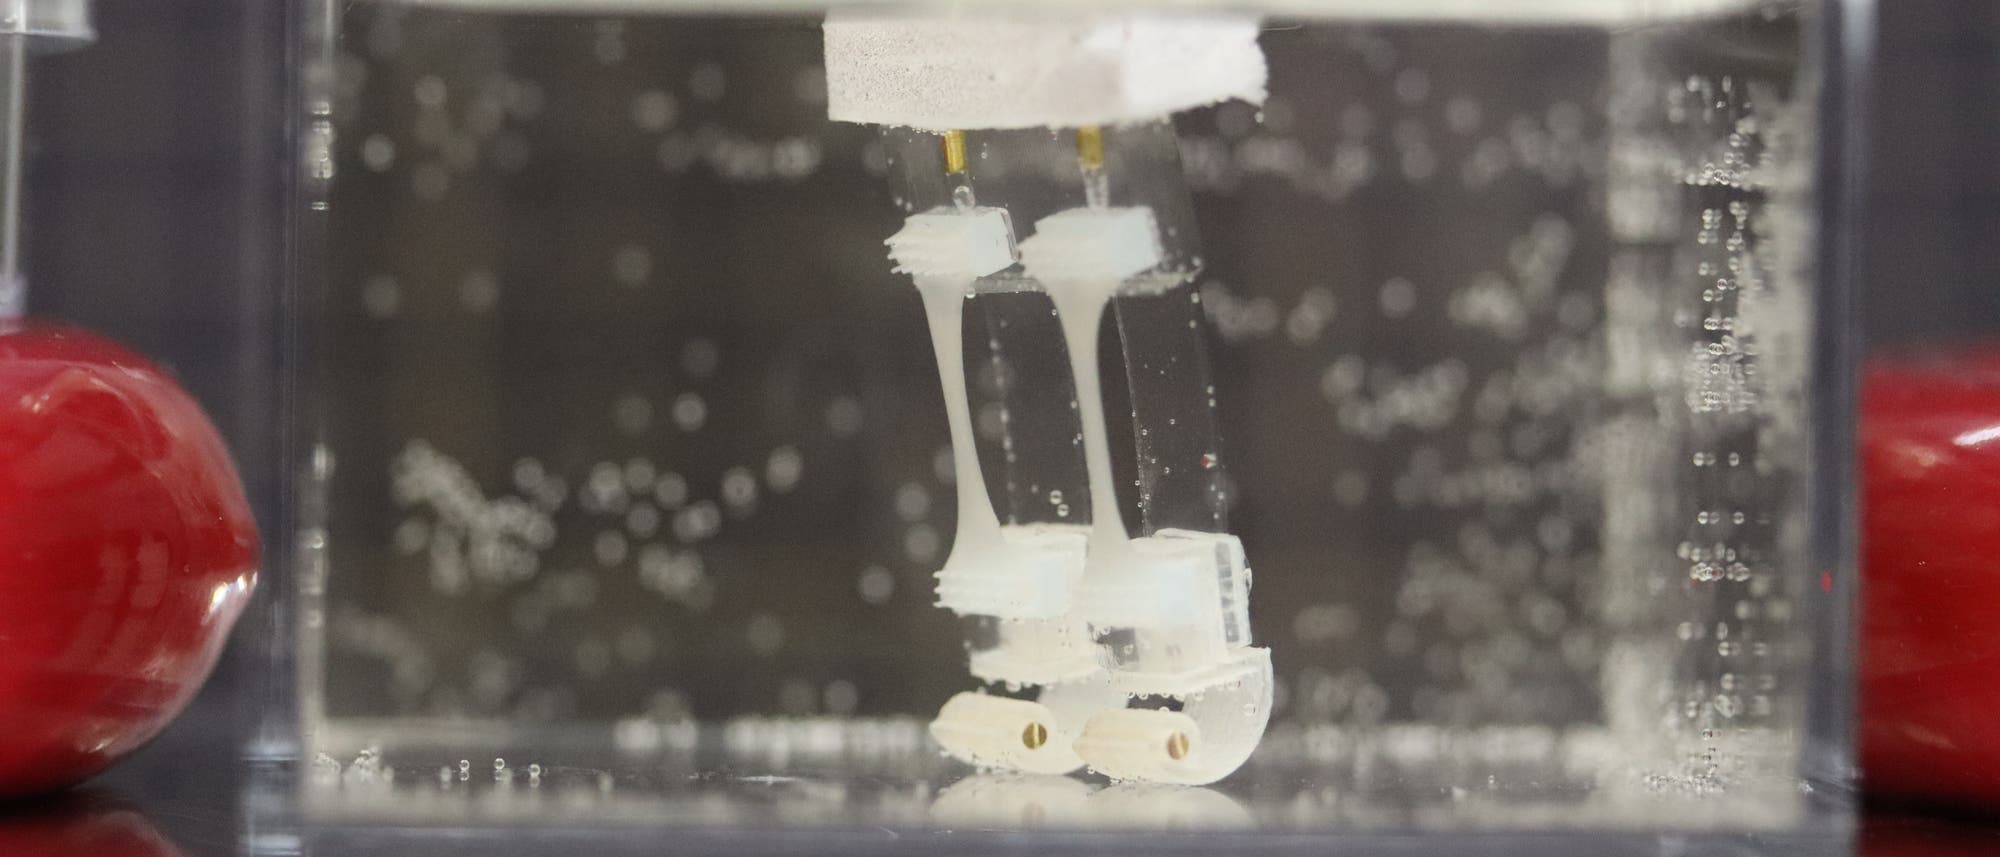 Zwei kleine Roboterbeine aus Silikon stehen aufrecht in Flüssigkeit in einem transparenten Behälter